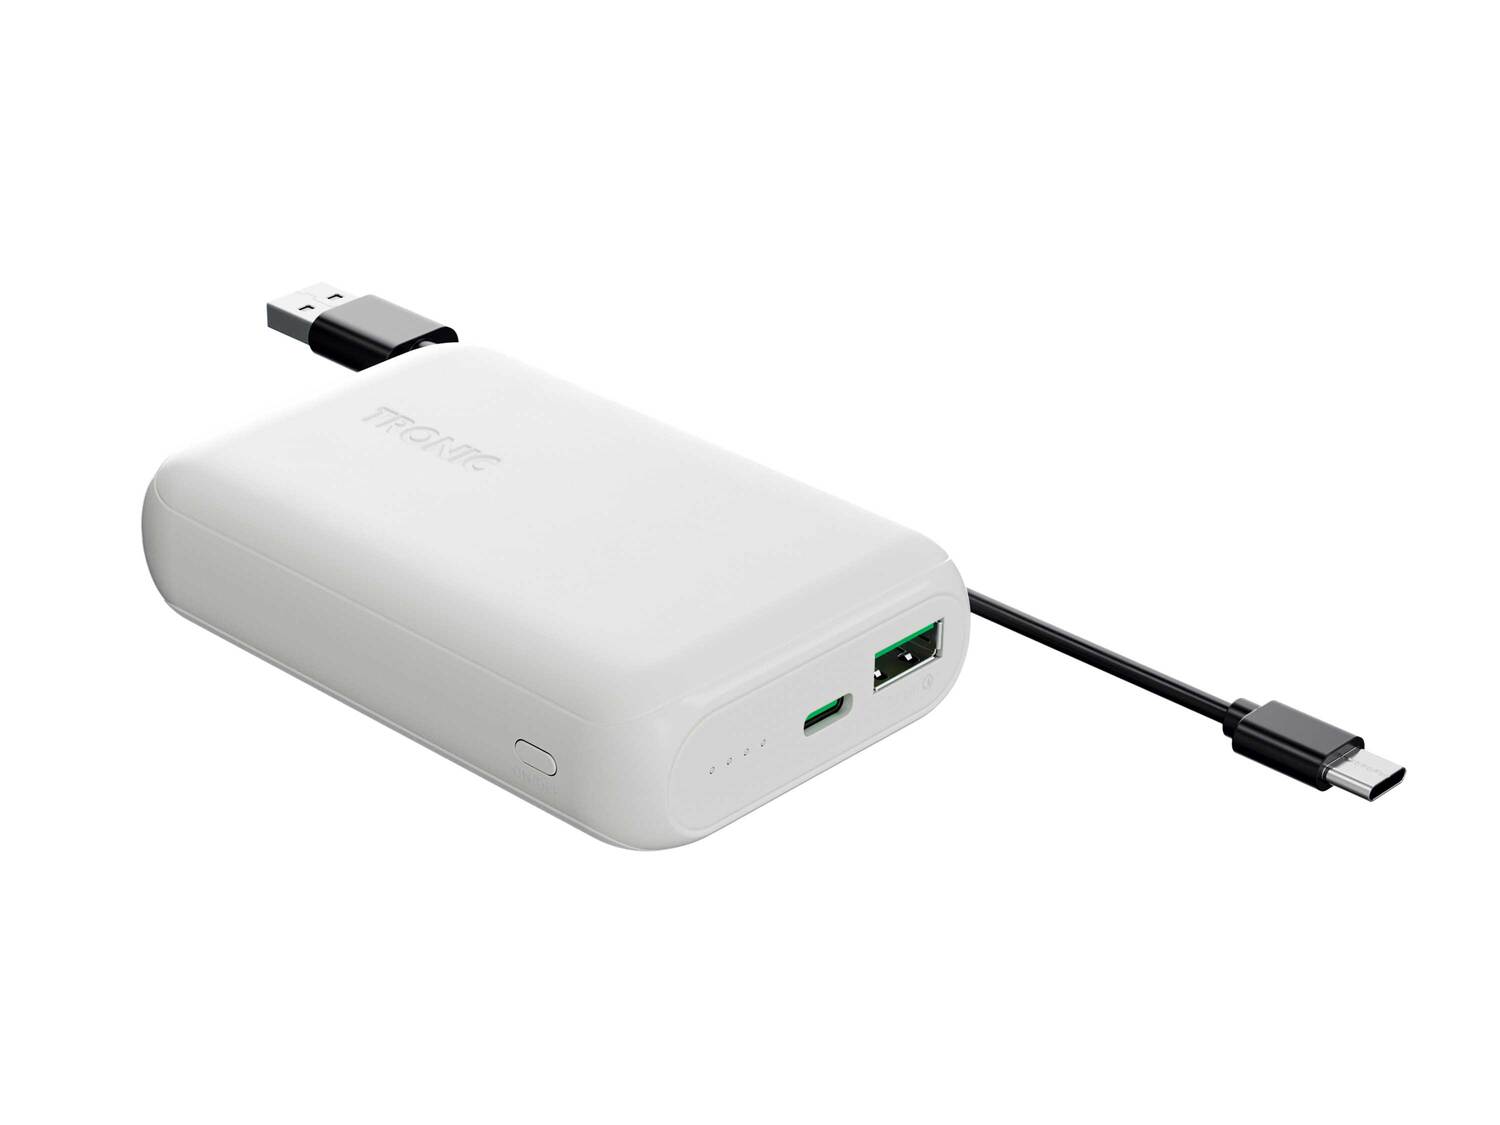 Batterie externe Powerbank , le prix 14.99 € 
- Pour recharger partout smartphones, ...